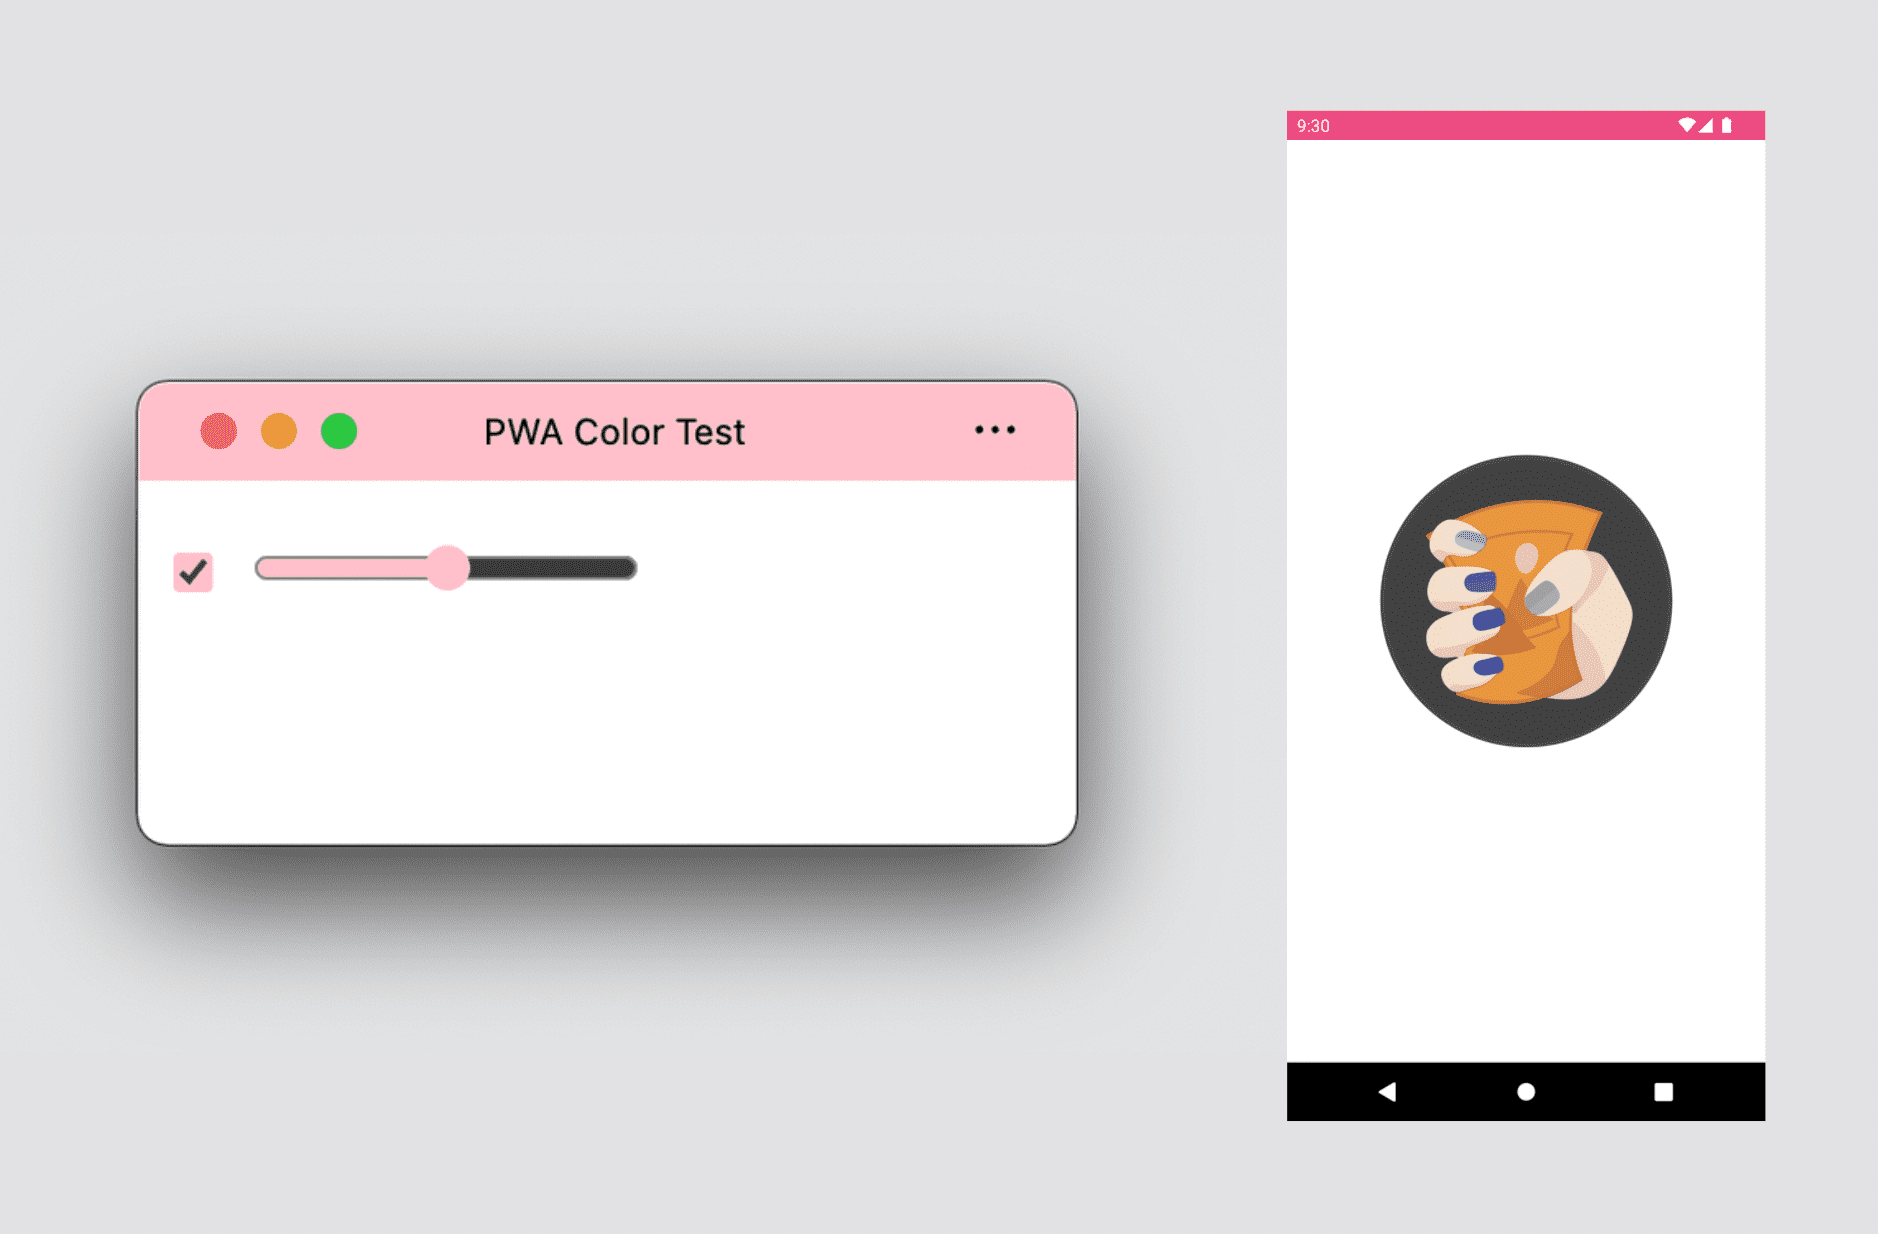 تطبيق ويب تقدّمي (PWA) على جهاز كمبيوتر مكتبي يعرض ألوان المظاهر والتمييز، وشاشة بداية PWA على Android تعرض ألوان المظاهر والخلفيات.